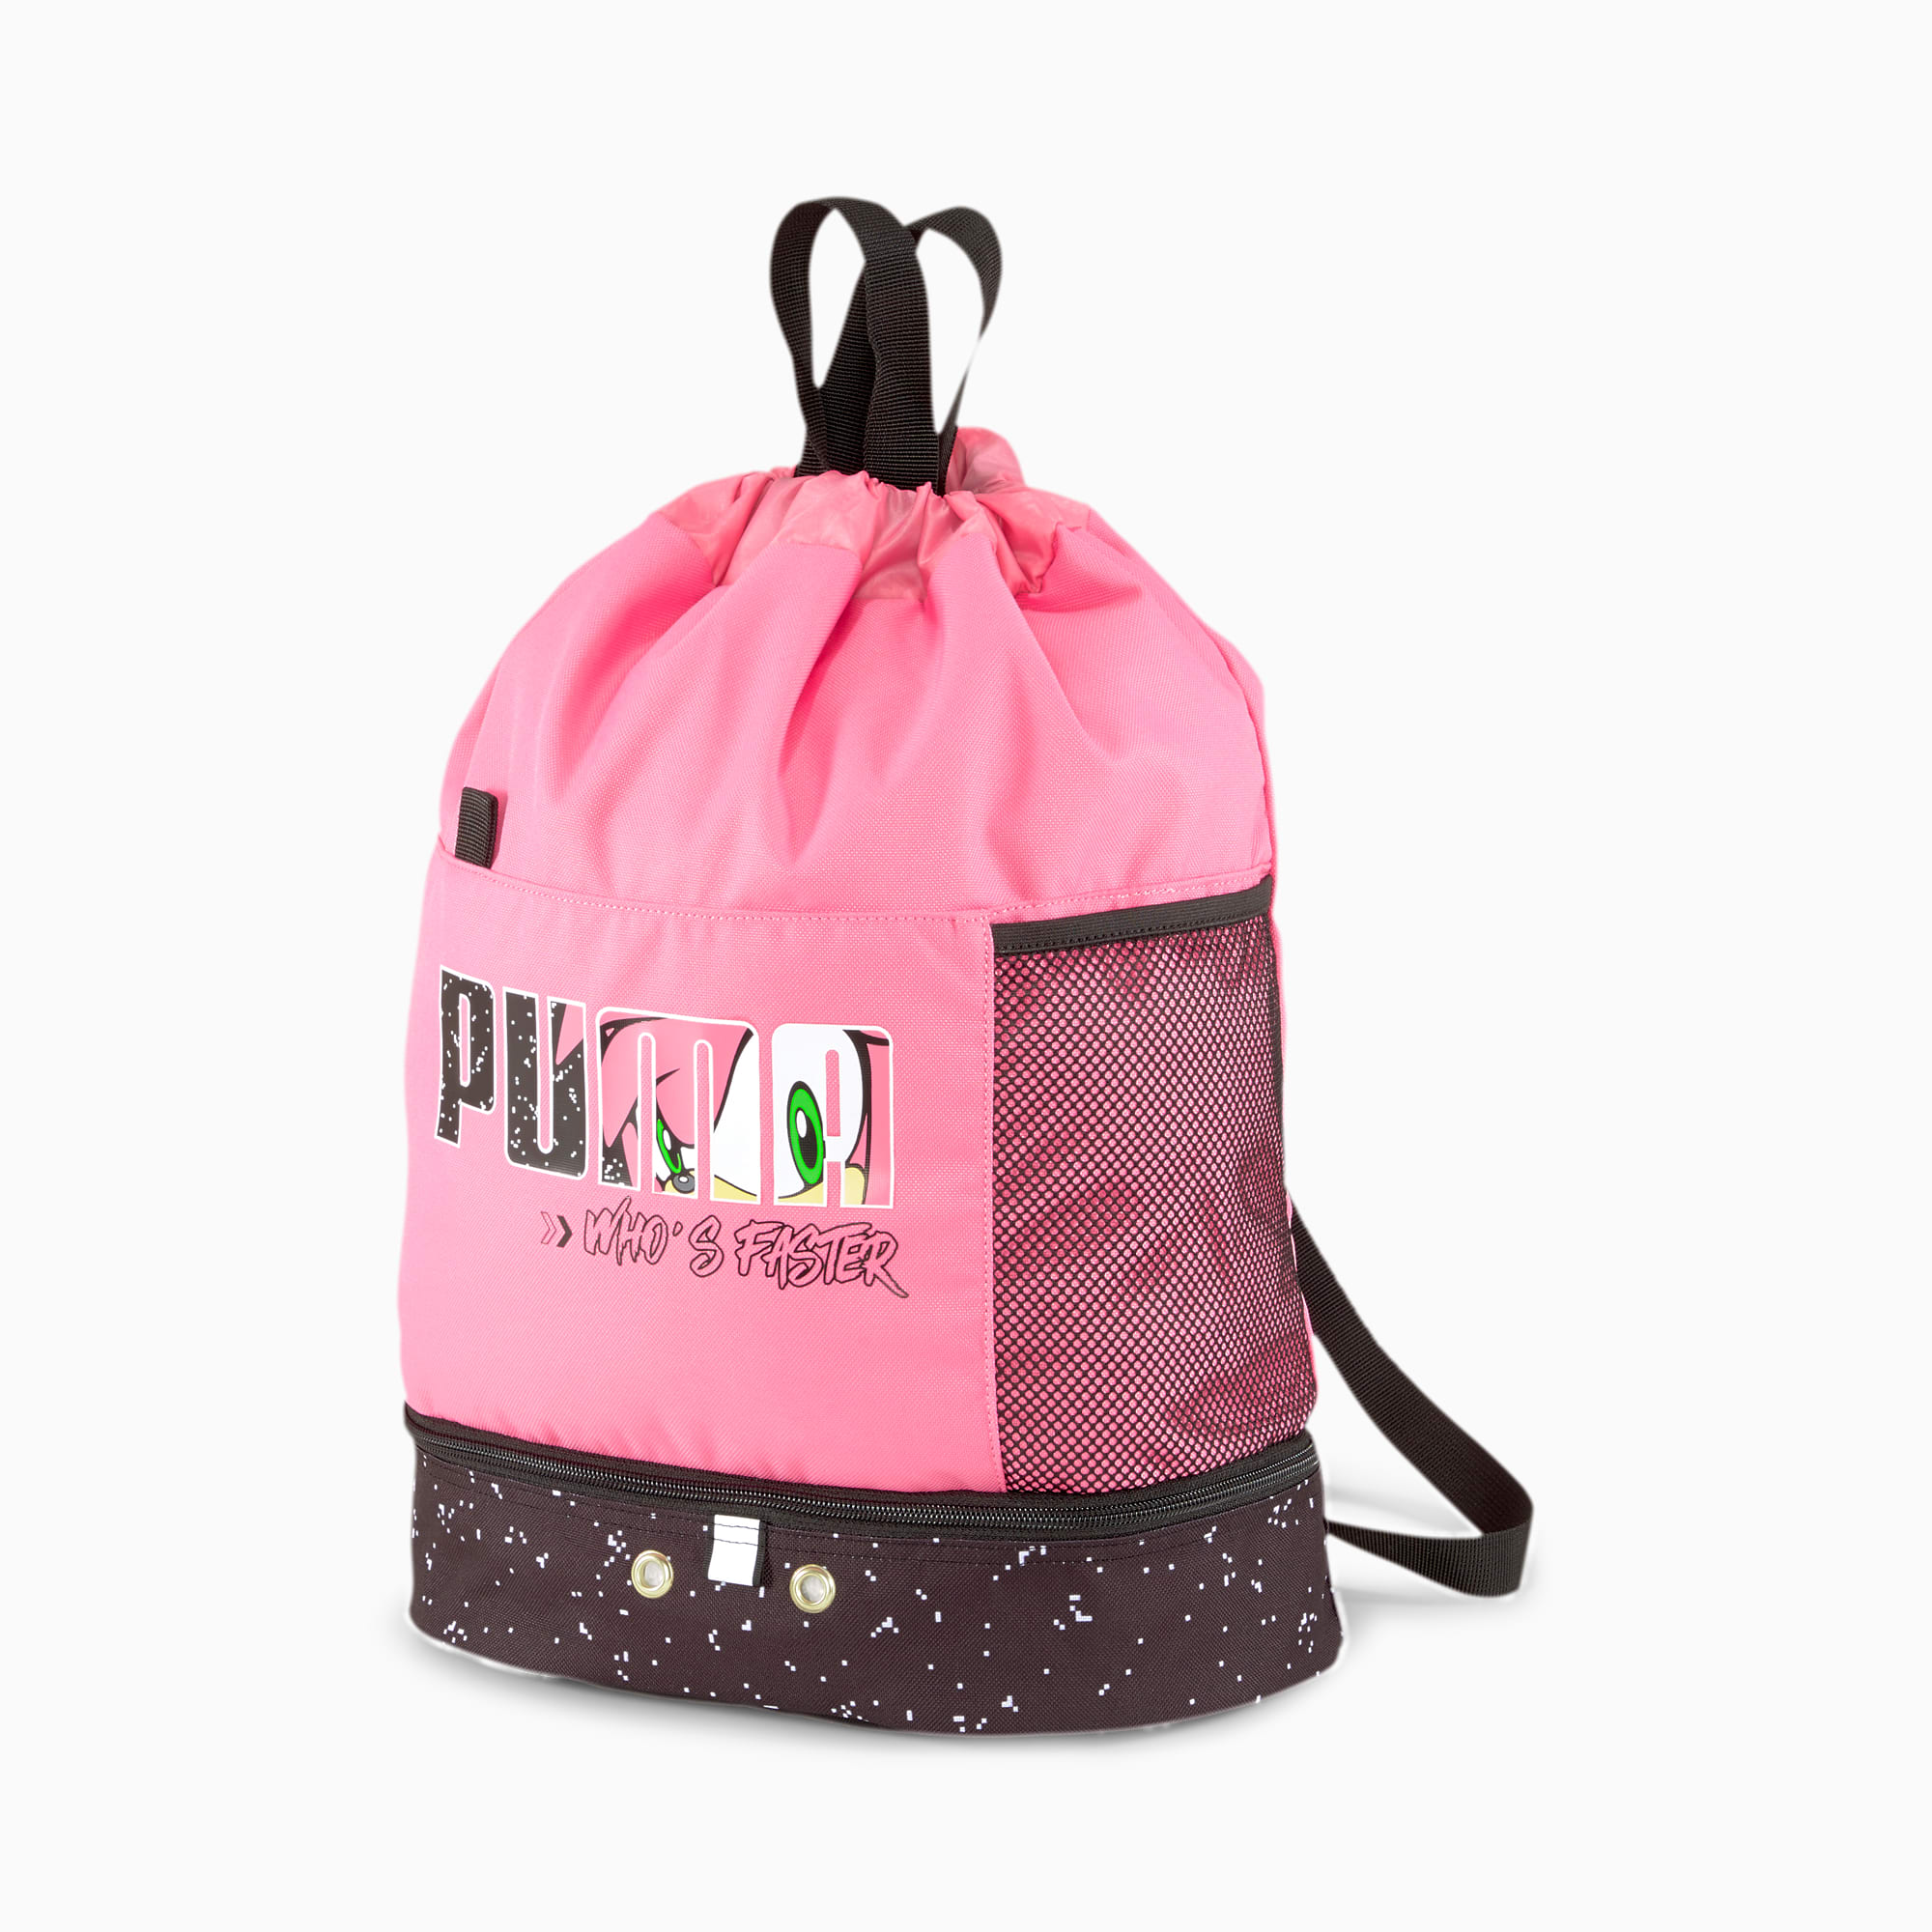 puma backpack kids